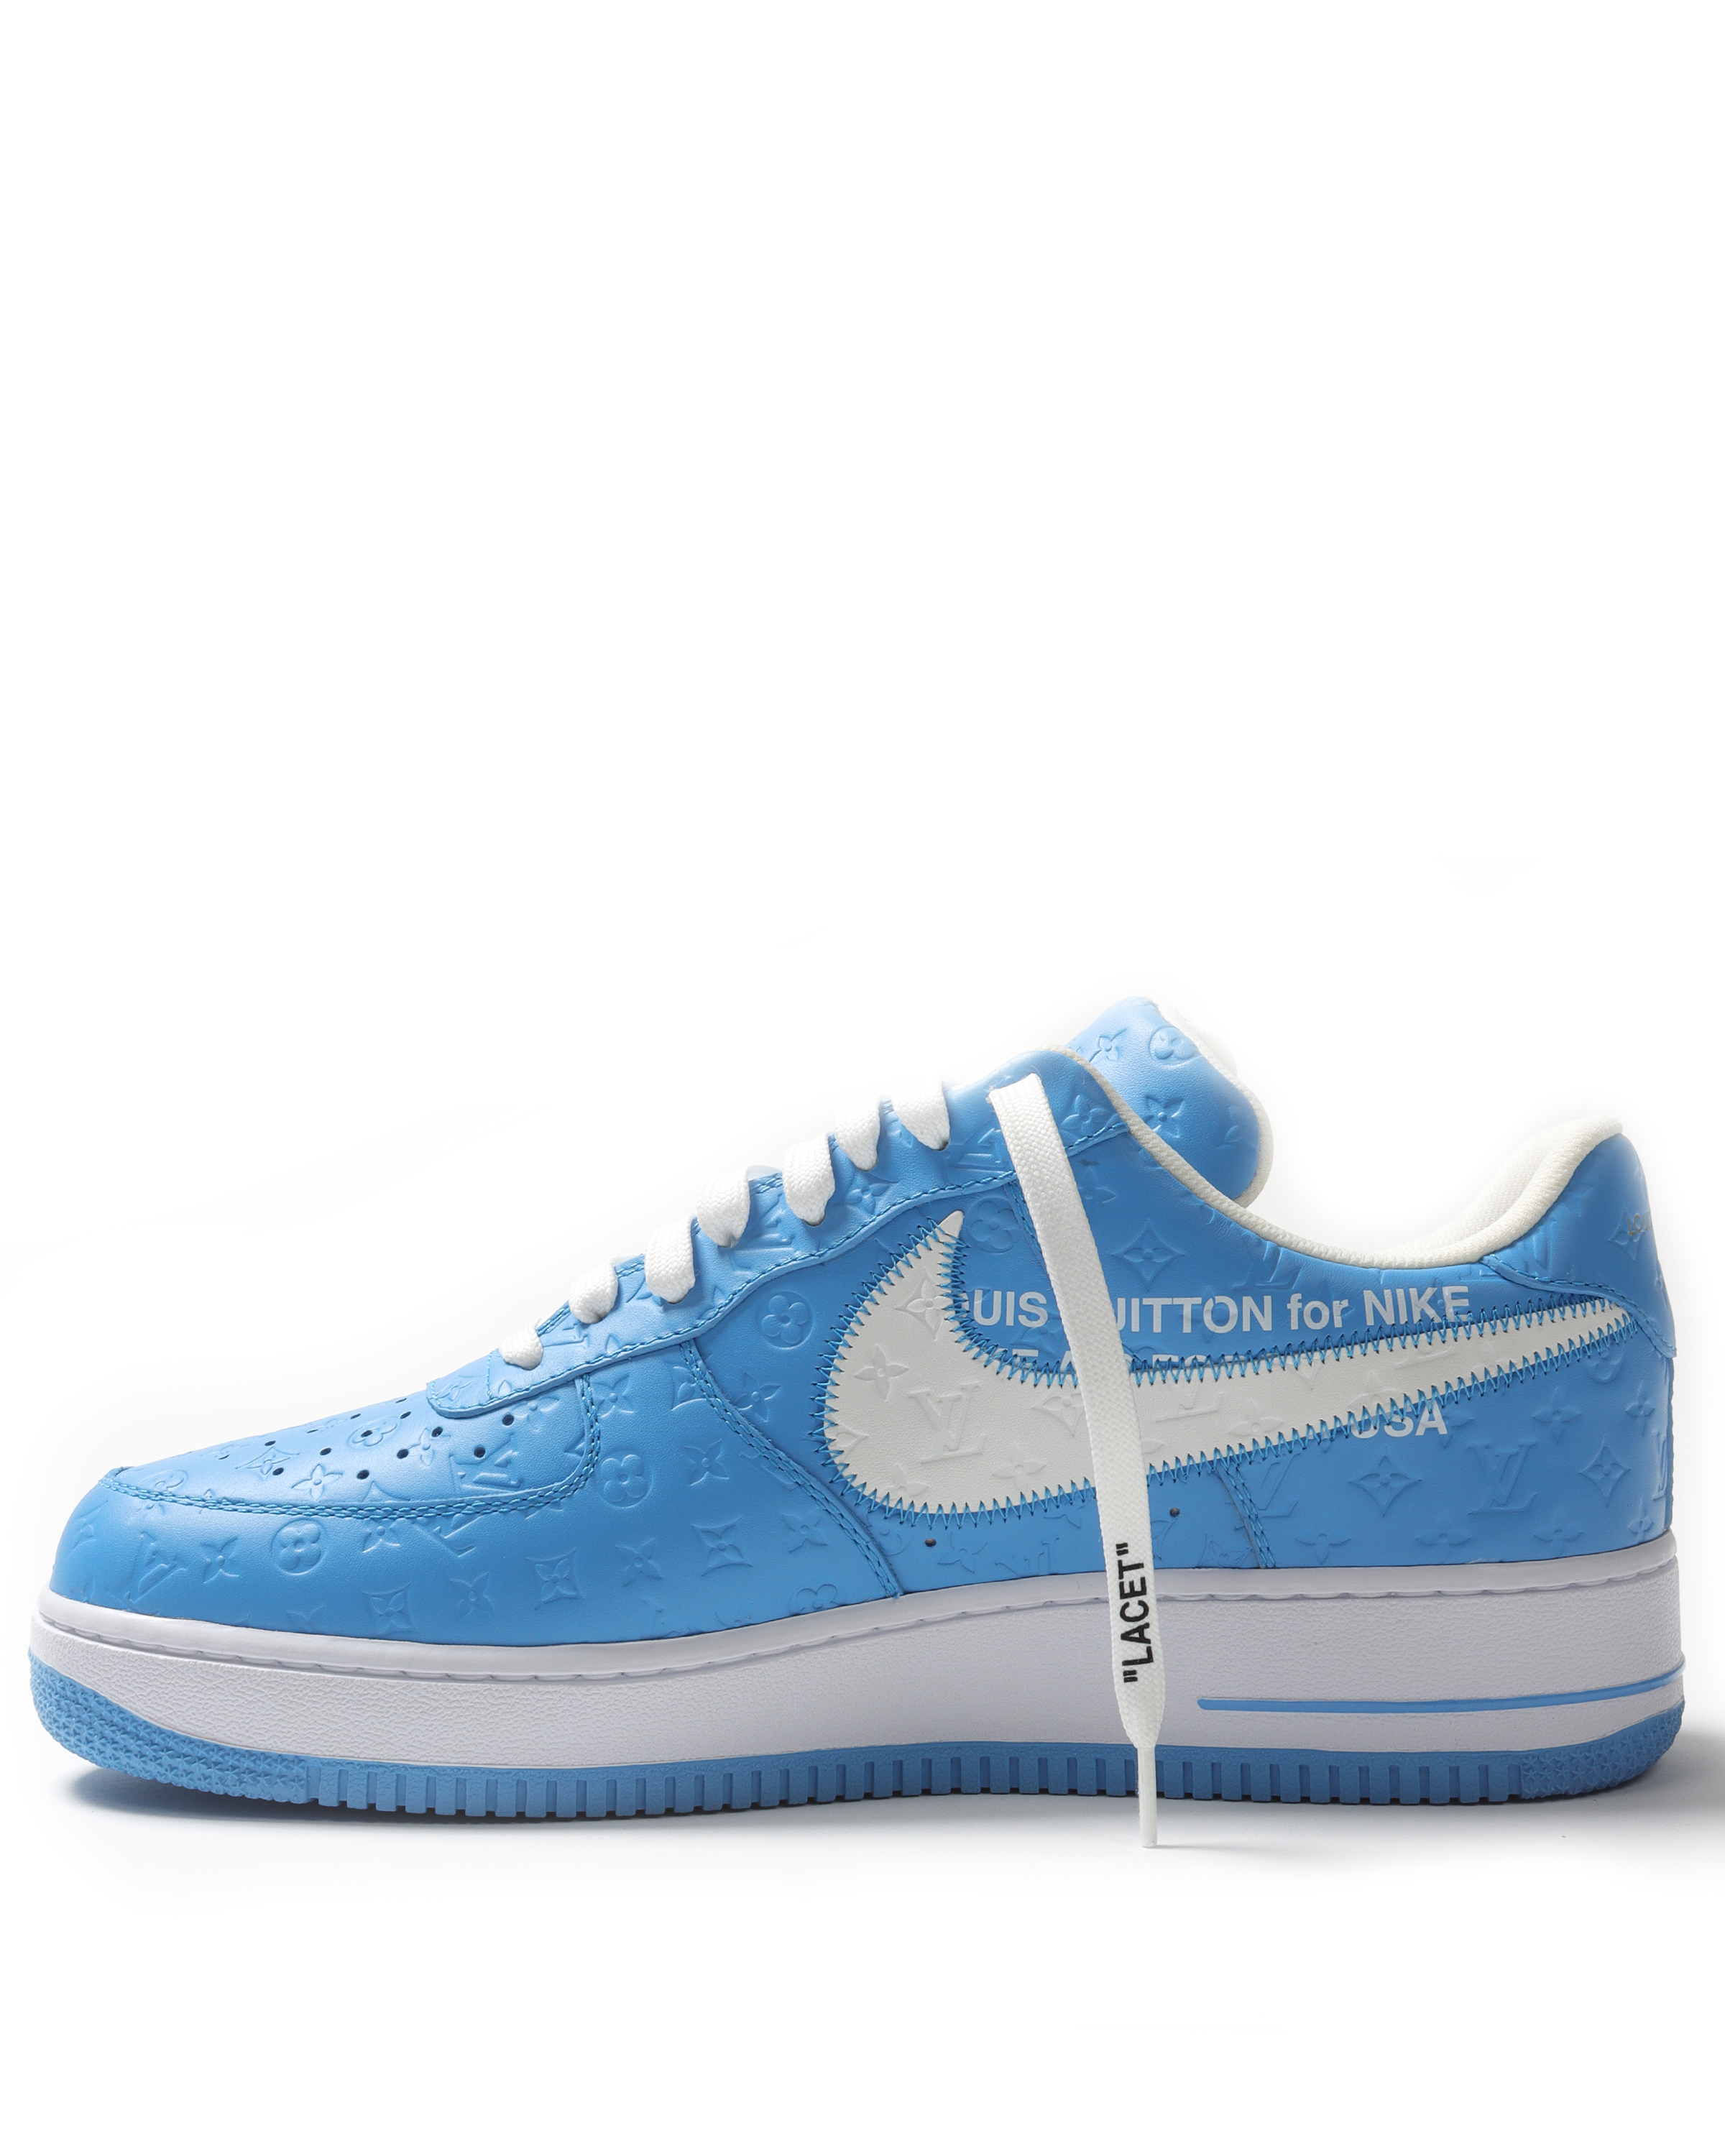 Nike, Louis Vuitton Louis Vuitton X Nike Air Force 1 Blue